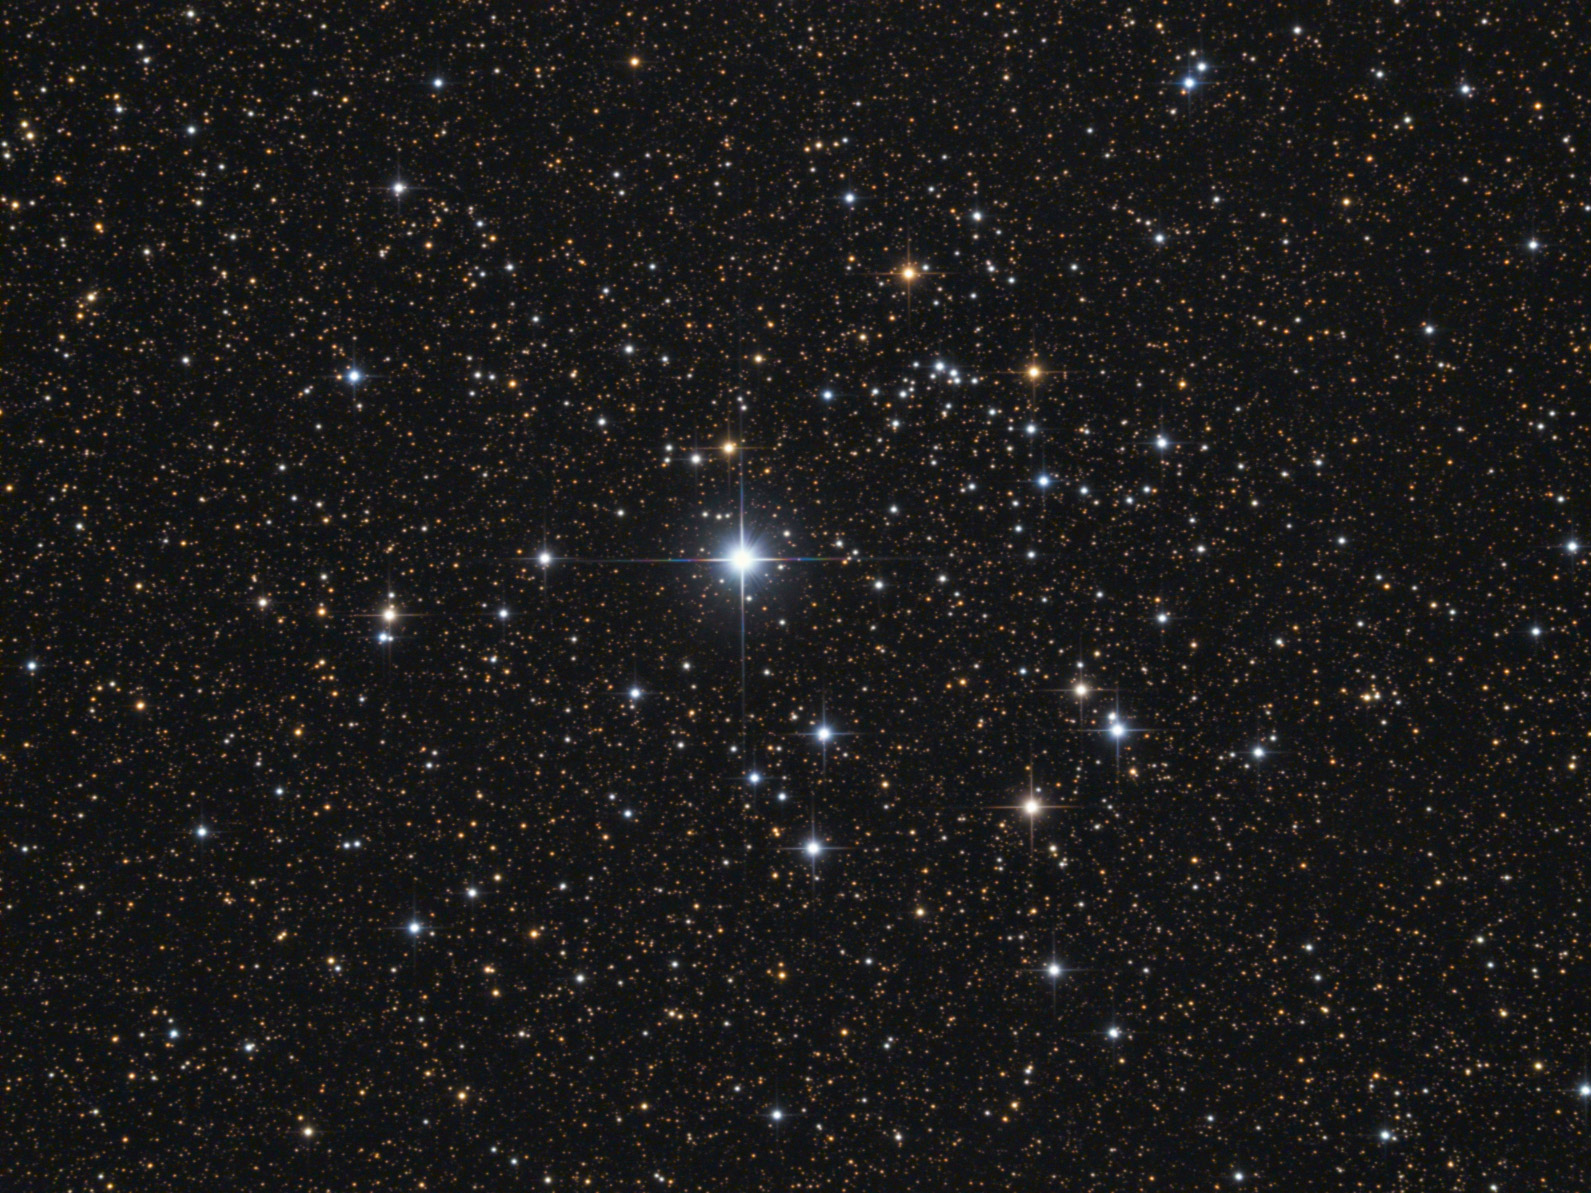 NGC 6882